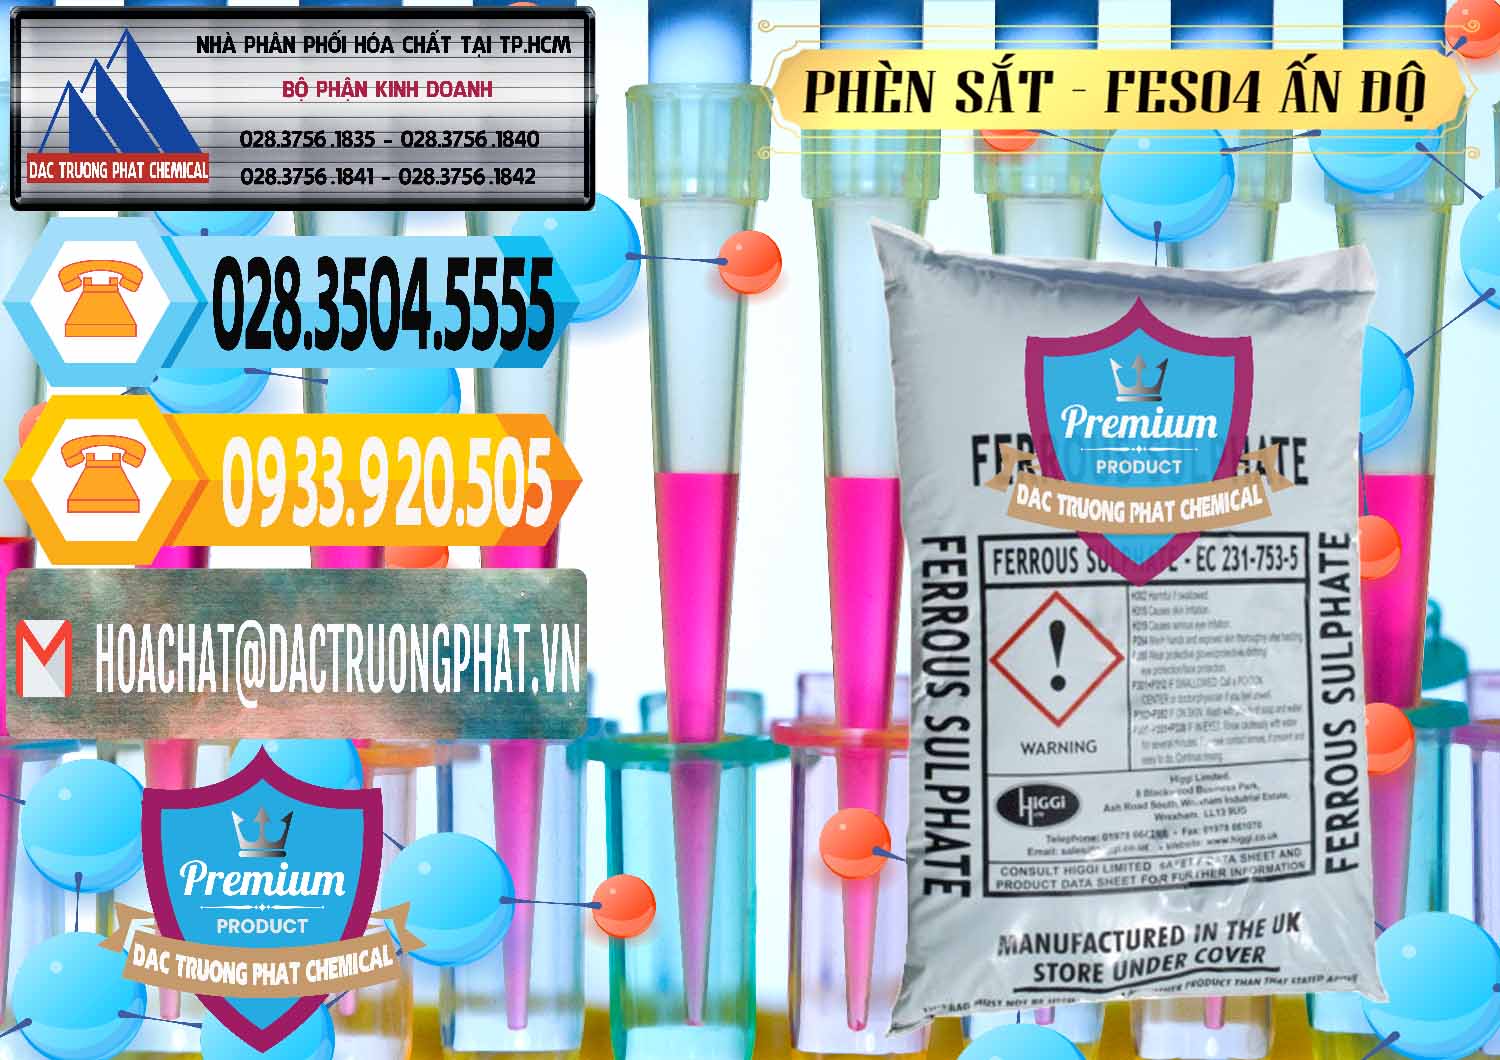 Cty bán ( cung cấp ) Phèn Sắt - FeSO4.7H2O Ấn Độ India - 0354 - Cty bán & phân phối hóa chất tại TP.HCM - hoachattayrua.net